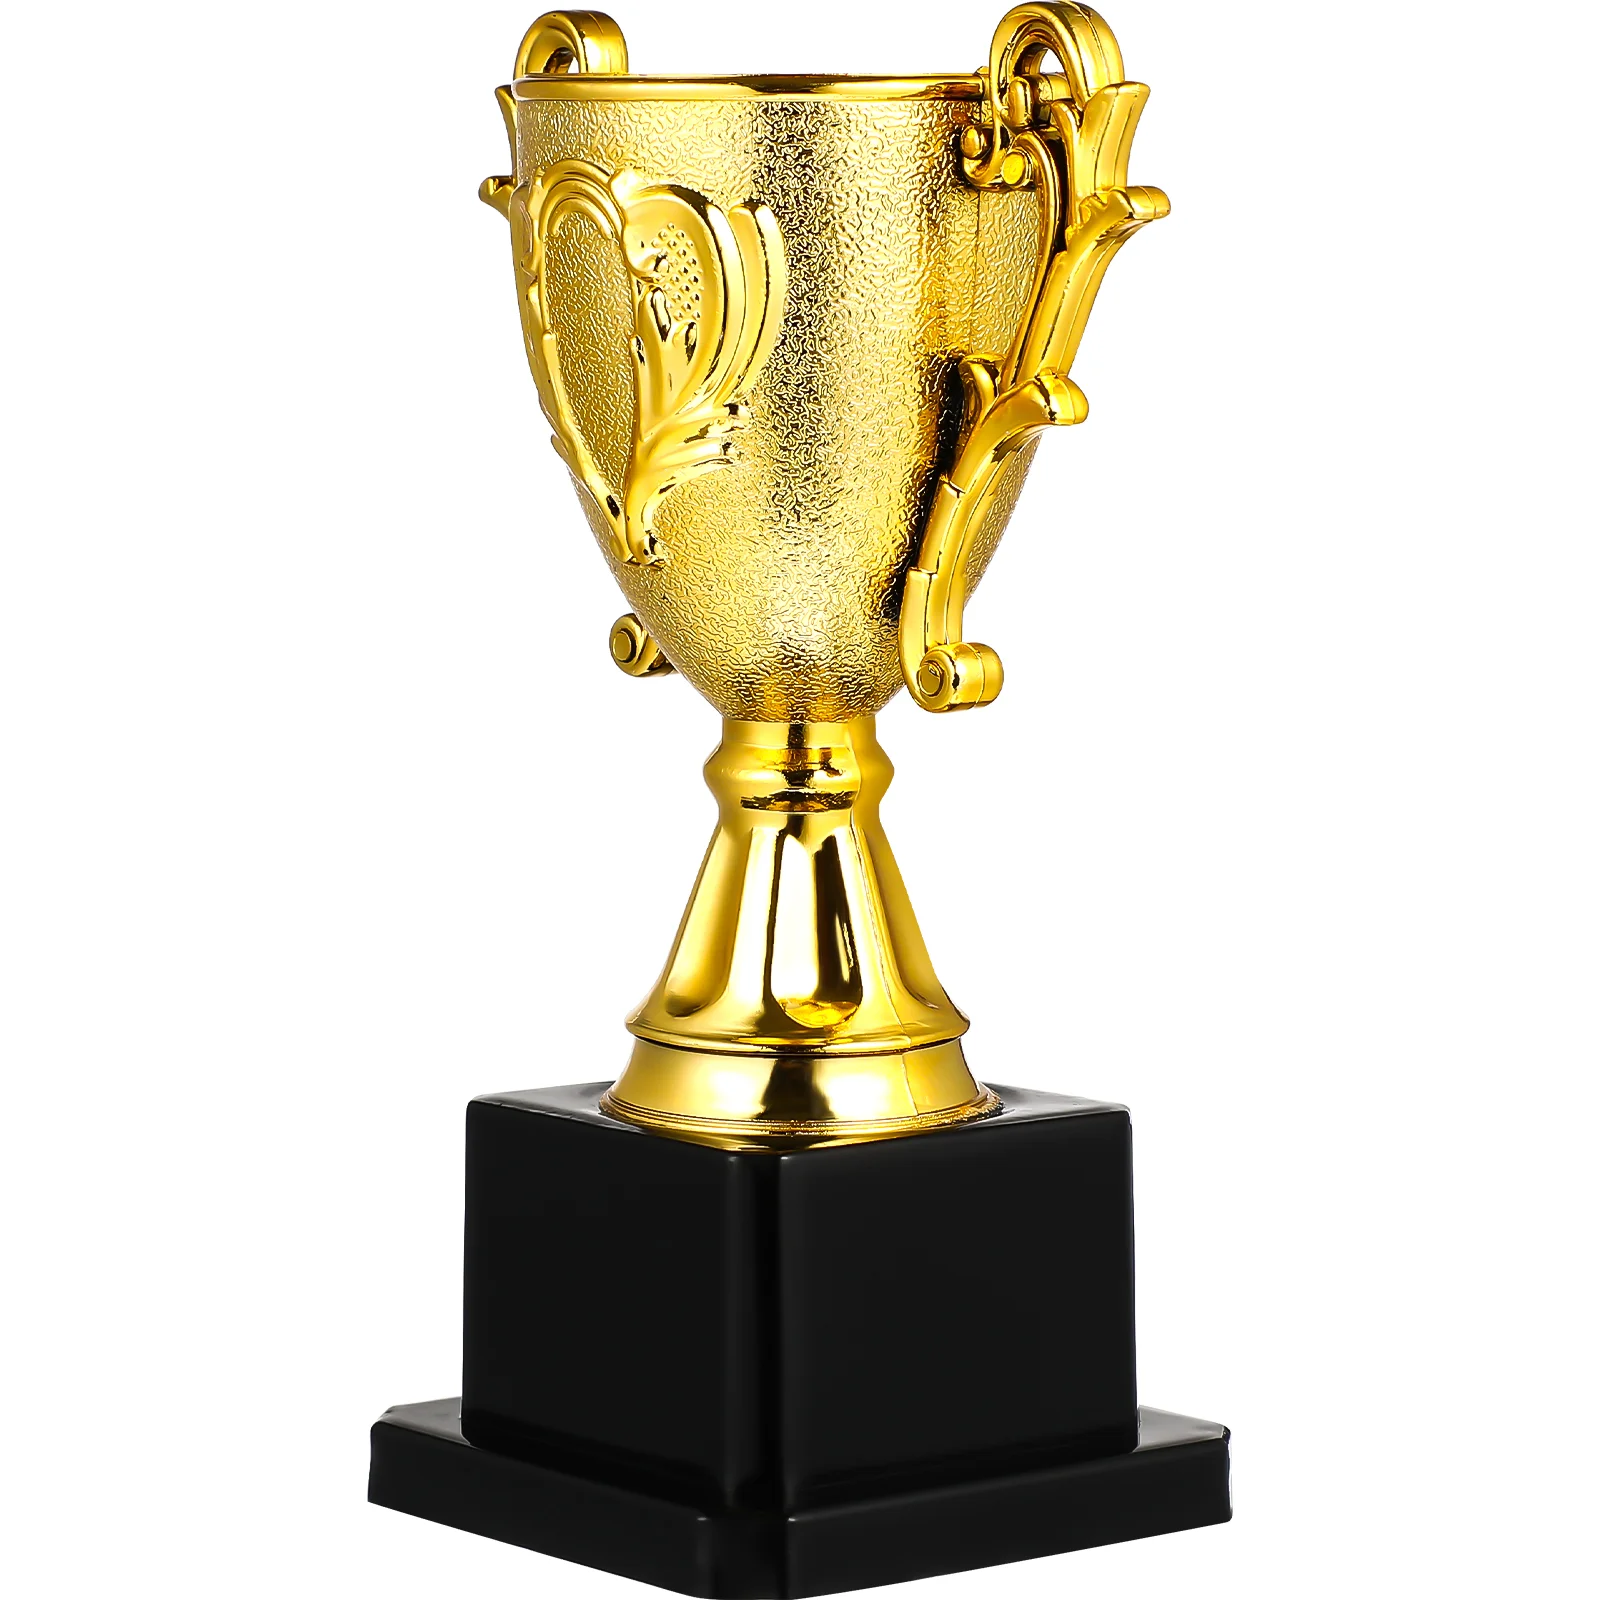 

Трофей Кубок награды победитель подарок личные турниры трофеи игры соревнования пластиковые награды